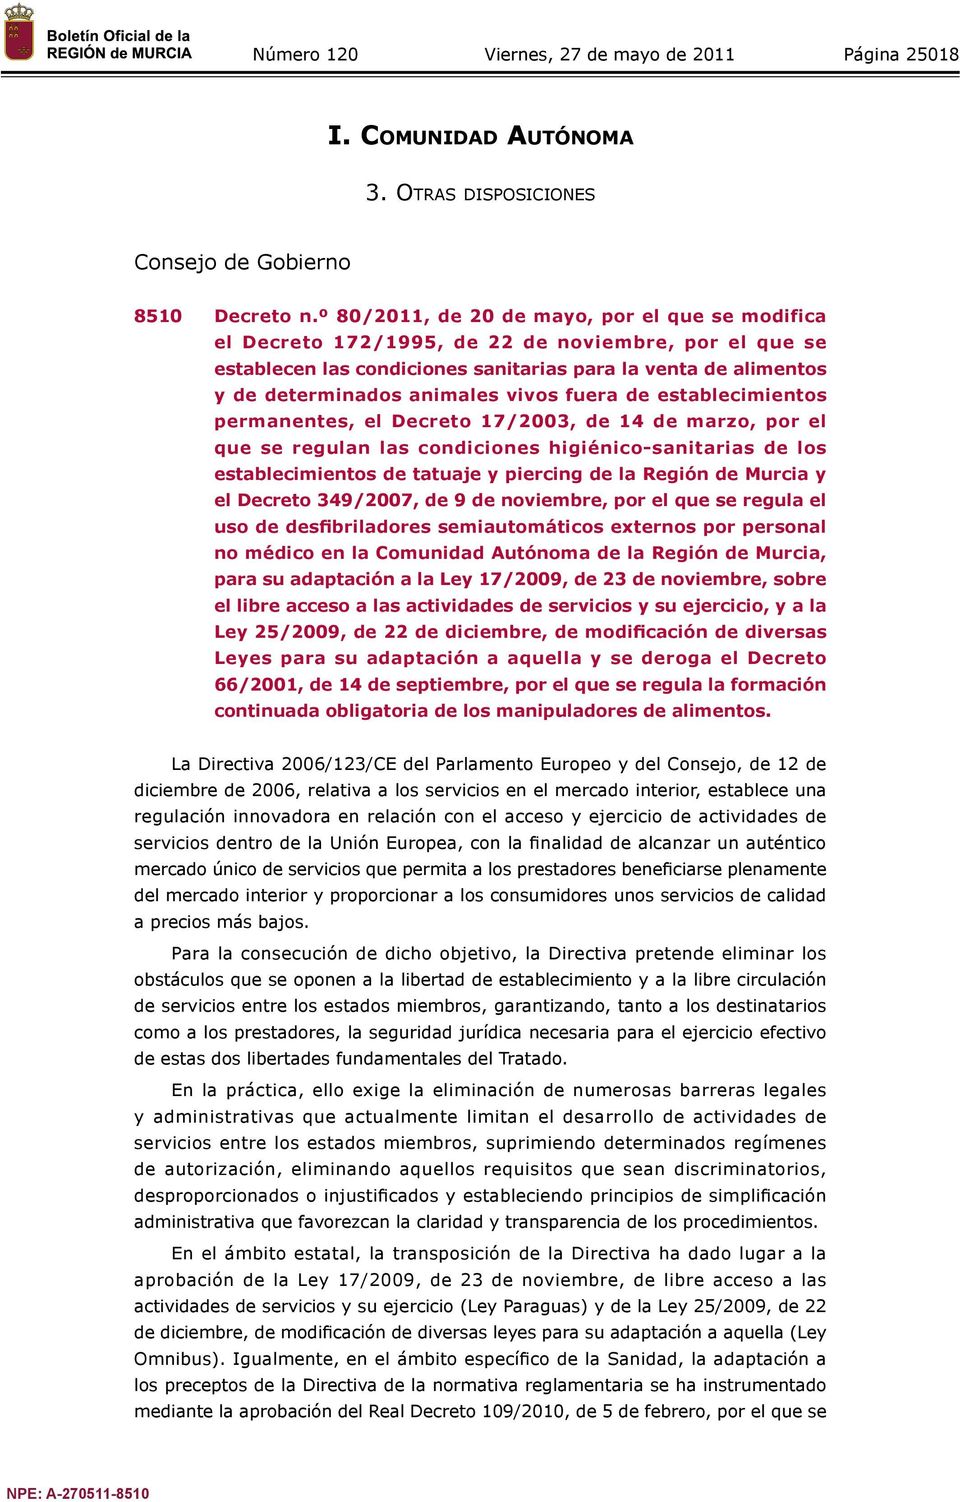 vivos fuera de establecimientos permanentes, el Decreto 17/2003, de 14 de marzo, por el que se regulan las condiciones higiénico-sanitarias de los establecimientos de tatuaje y piercing de la Región